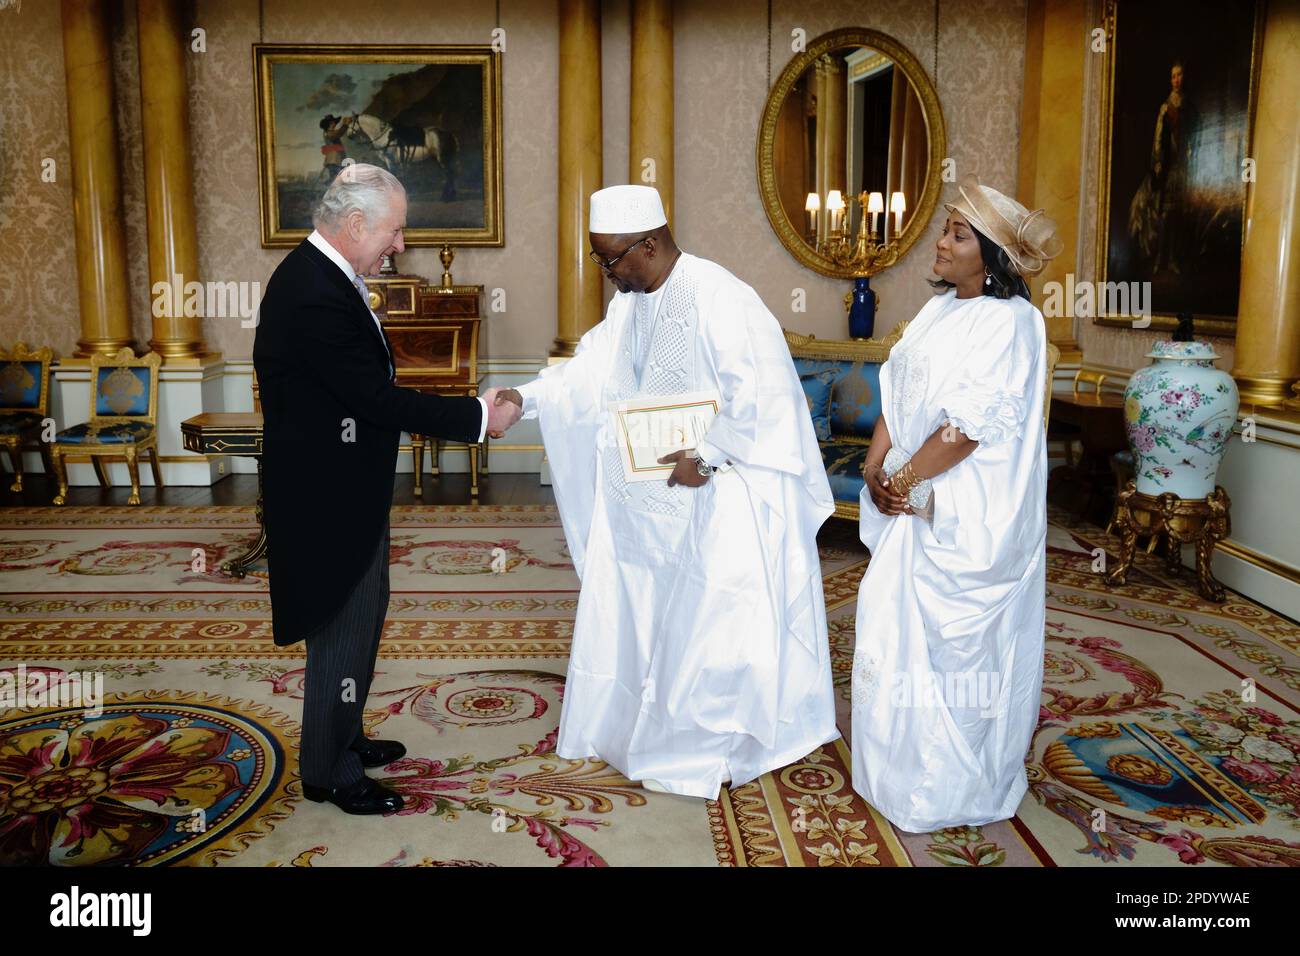 Le roi Charles III reçoit l'ambassadeur de la République de Guinée, Aly Diallo, lors d'une audience au Palais de Buckingham, Londres. Date de la photo: Mercredi 15 mars 2023. Banque D'Images